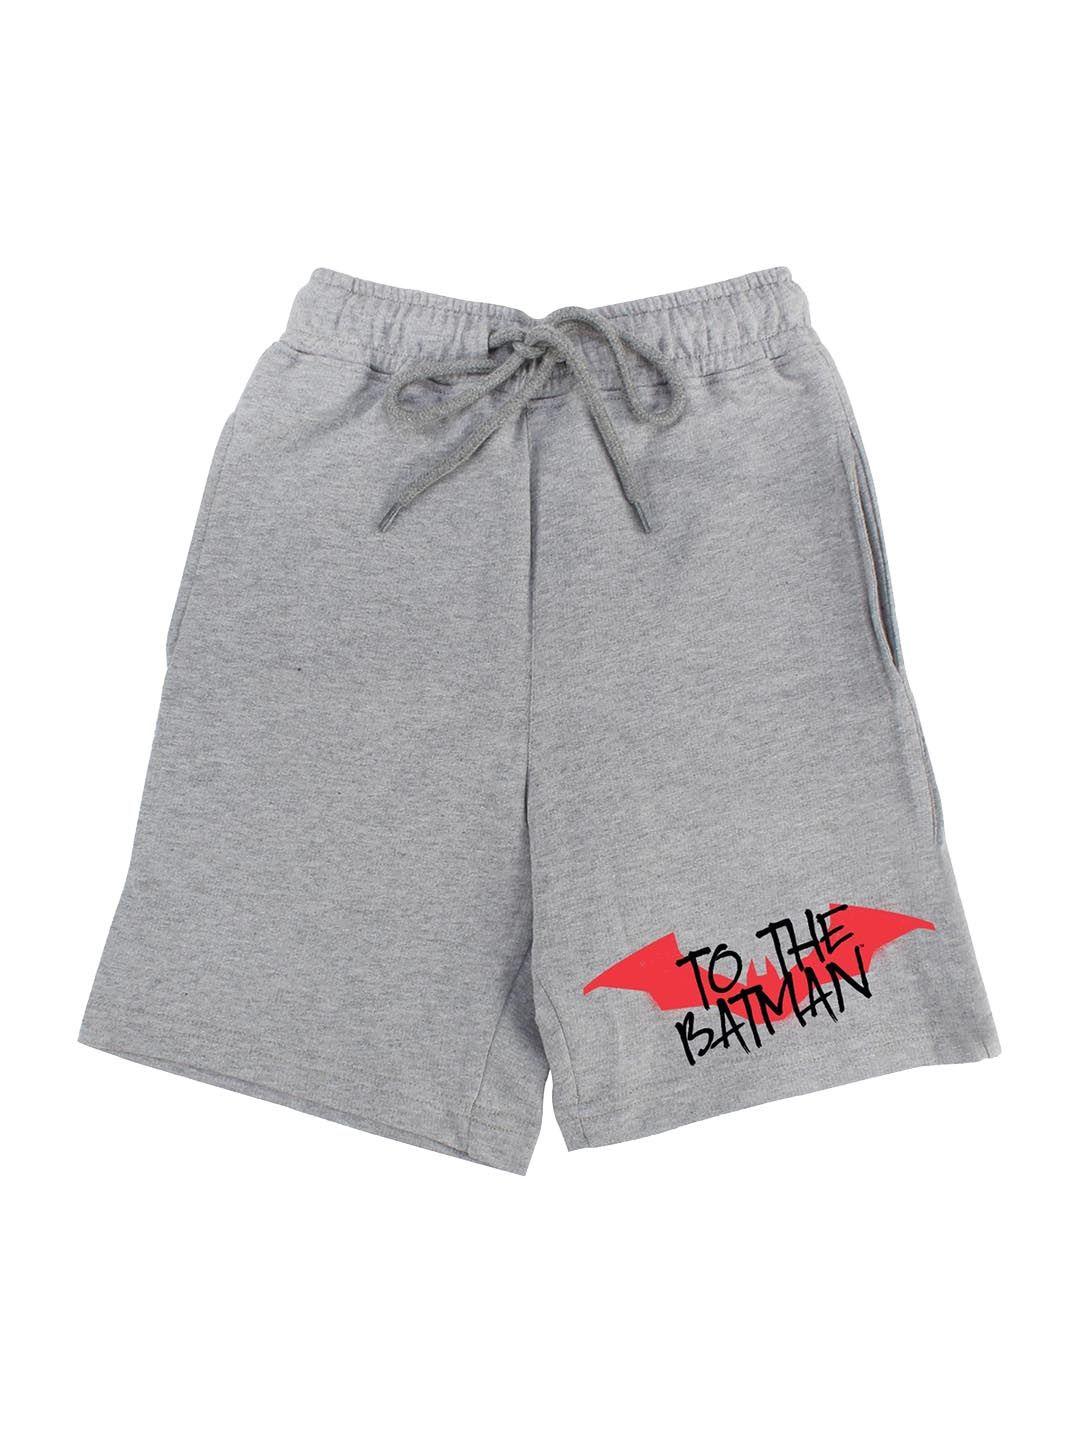 dc by wear your mind boys grey batman printed regular shorts